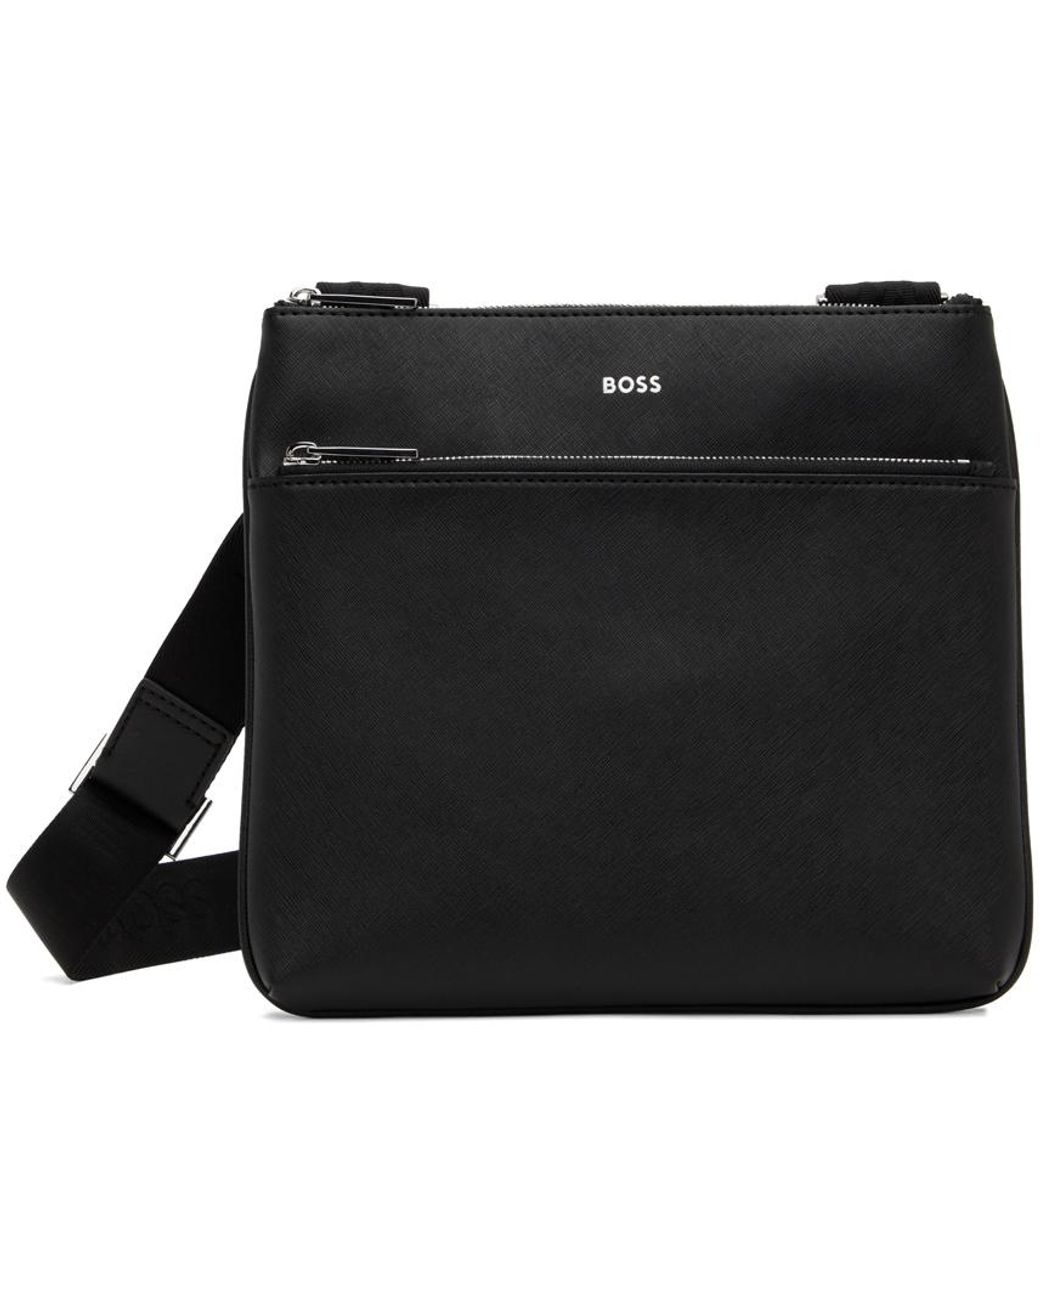 BOSS by HUGO BOSS Black Envelope Bag for Men | Lyst Australia